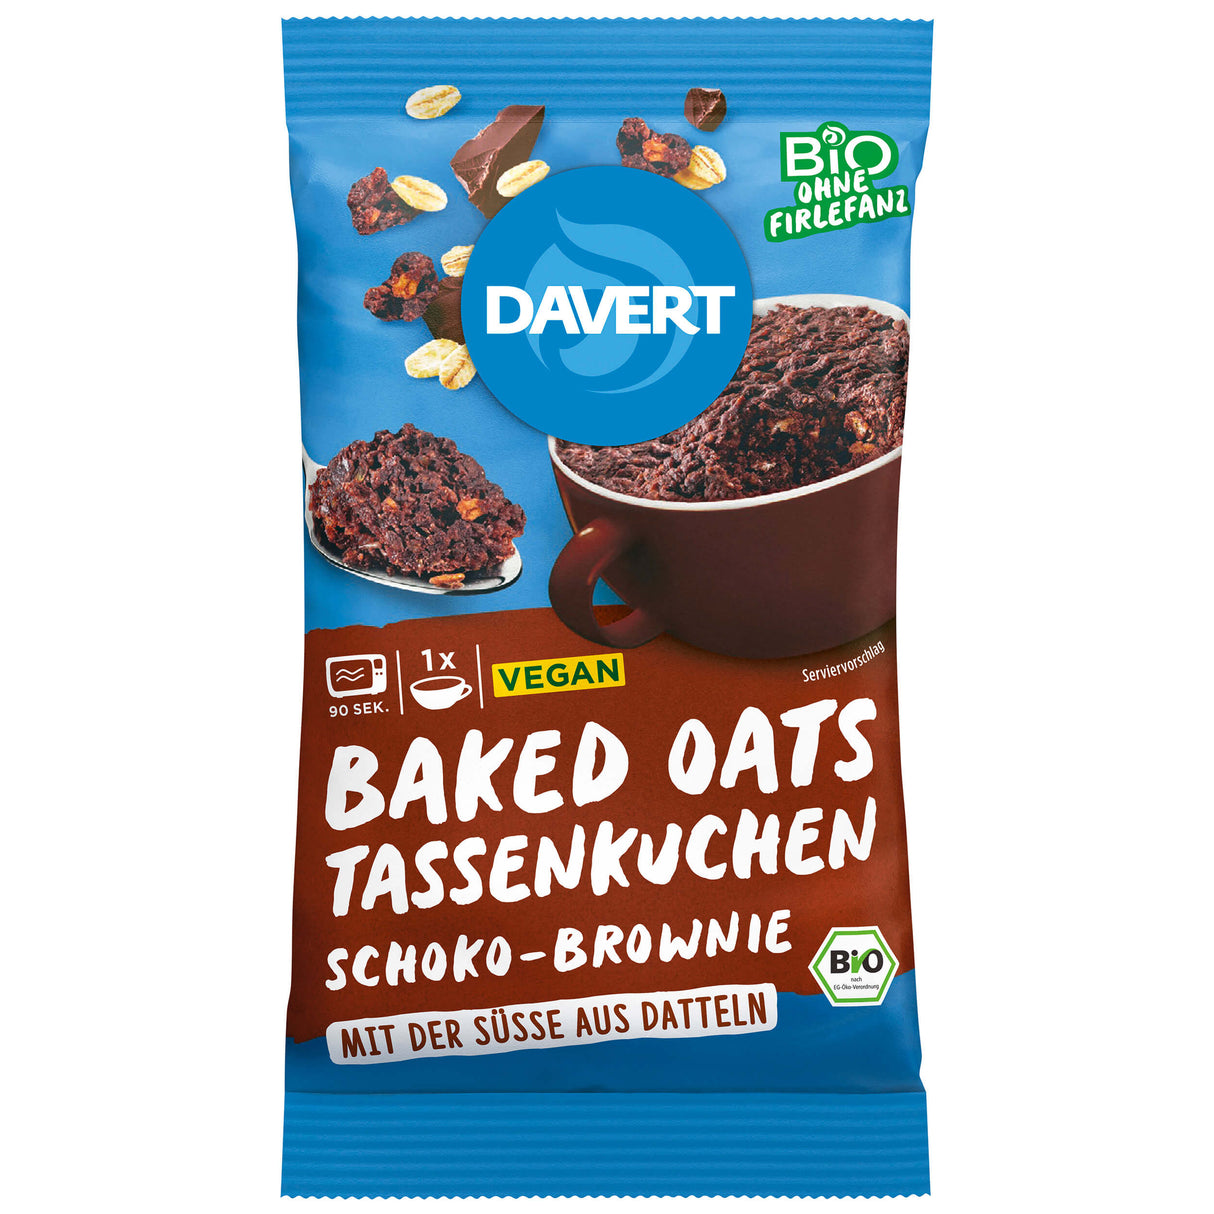 Bio Baked Oats Tassenkuchen Schoko-Brownie, 65 g